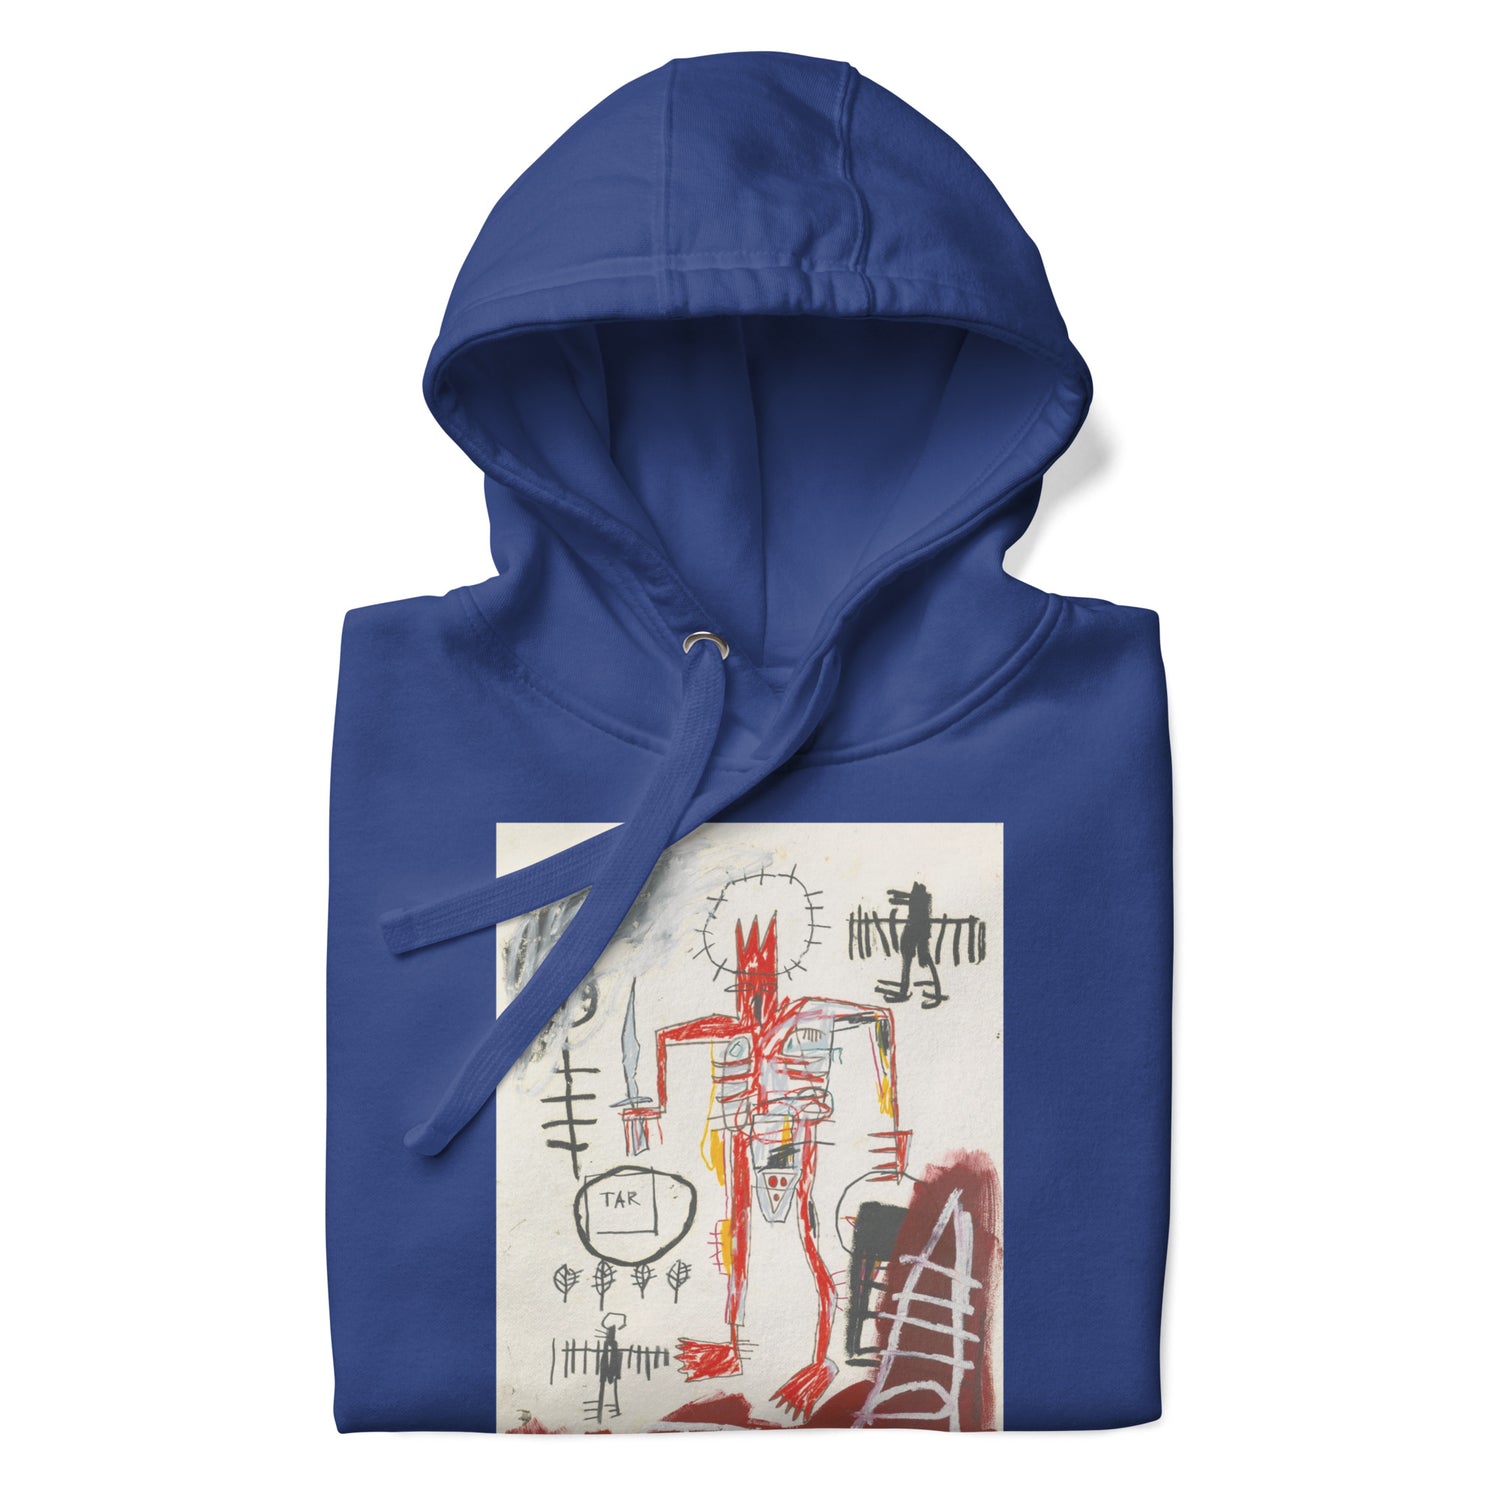 Jean-Michel Basquiat "Untitled" Artwork Printed Premium Streetwear Sweatshirt Hoodie Royal Blue